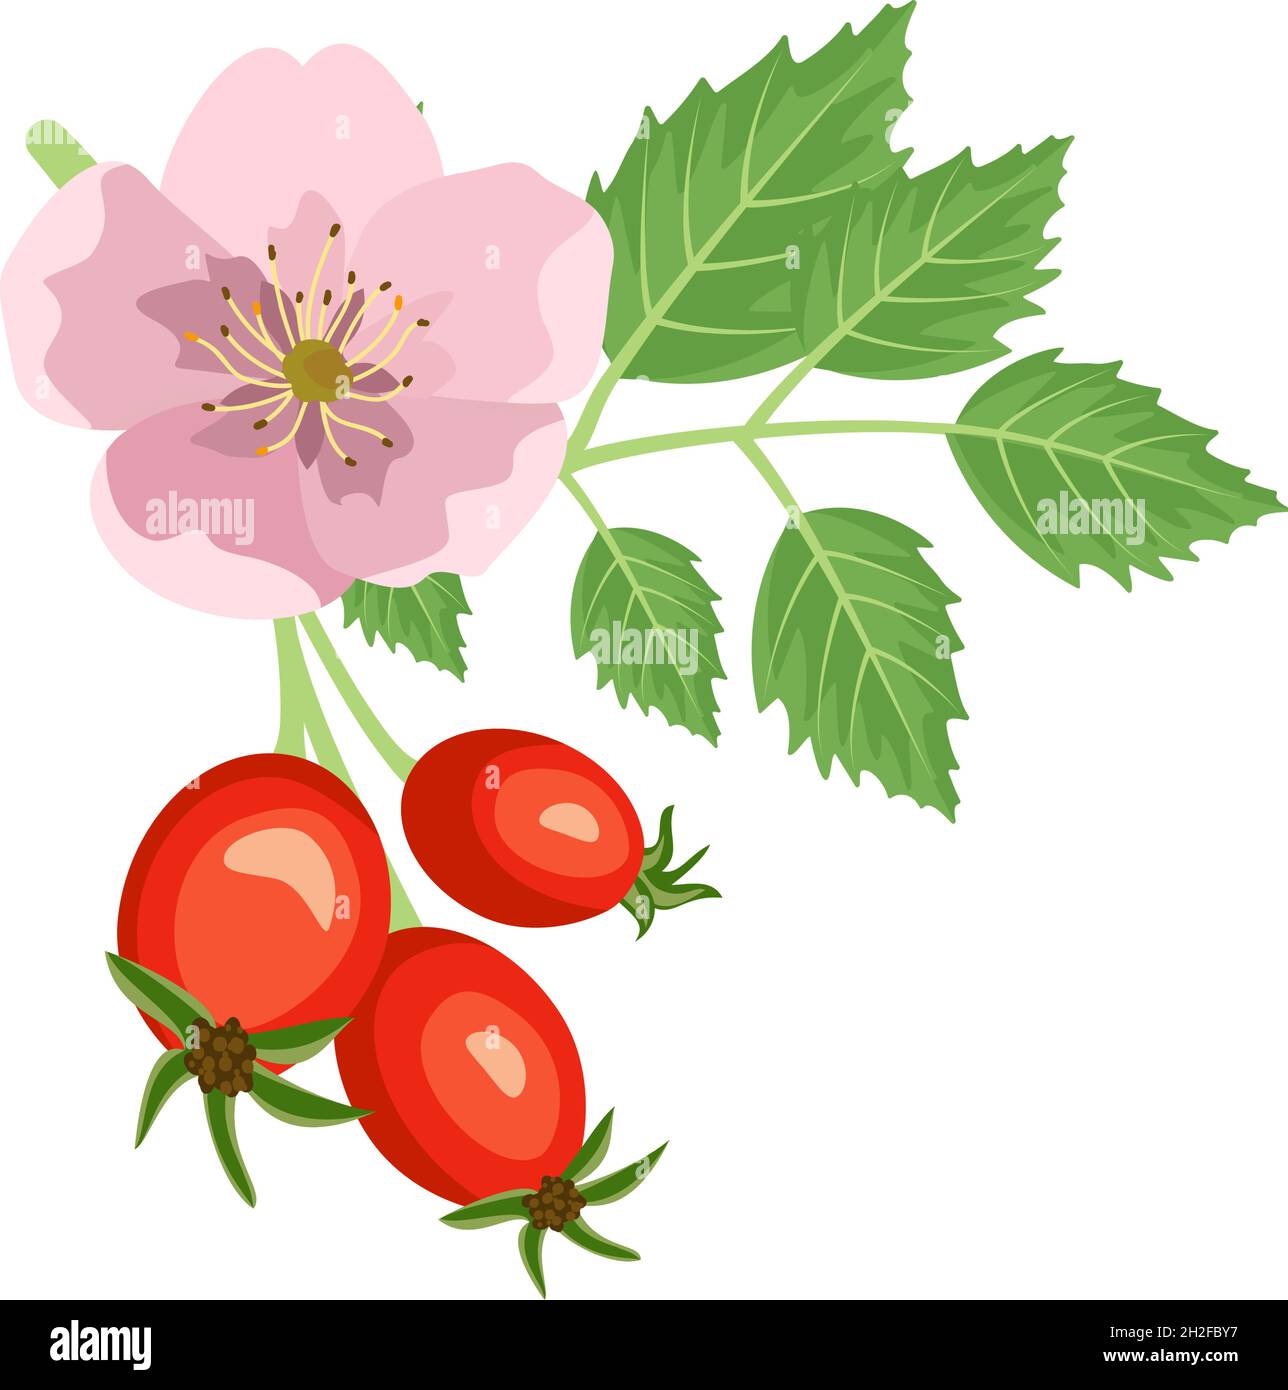 Branche de rosehip avec fleur de rose et baies.Source de vitamine C. fruits rouges avec feuilles vertes.Éléments pour un design d'été et d'automne.Illustration vectorielle plate Illustration de Vecteur